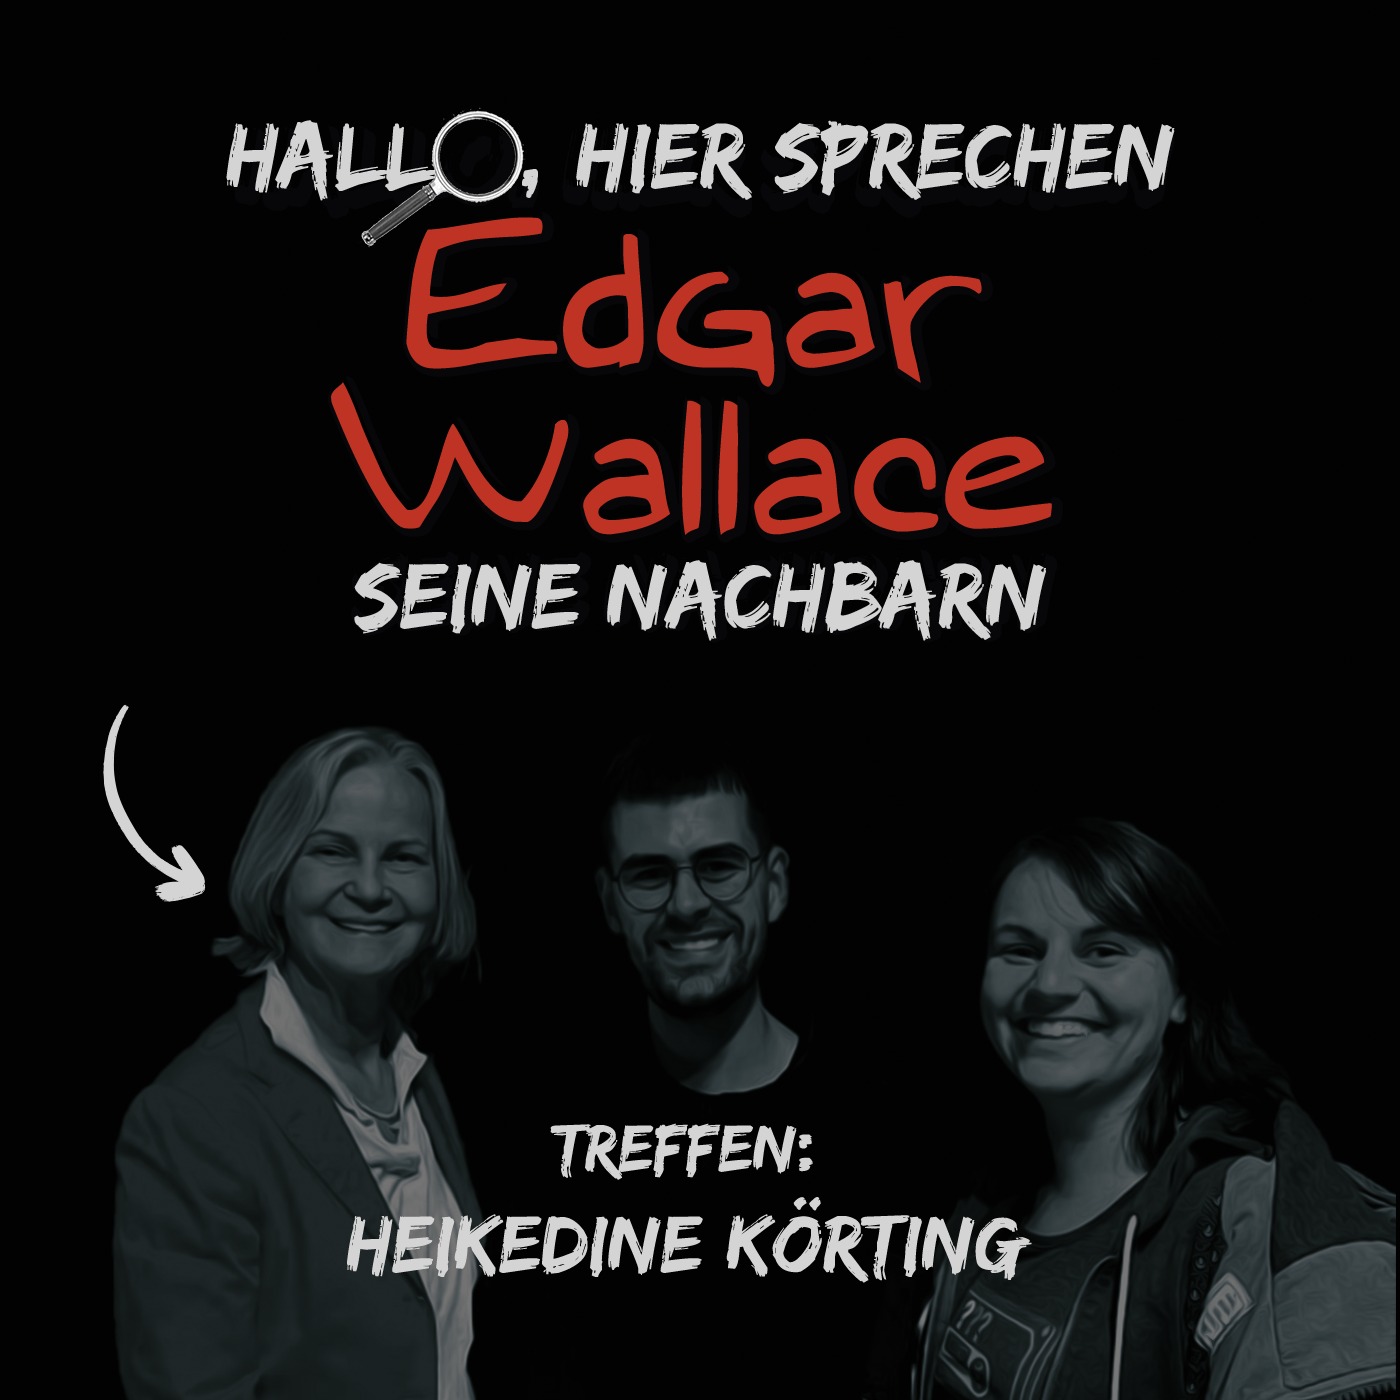 Interview mit Heikedine Körting (zu den Edgar Wallace Hörspielen von Europa)